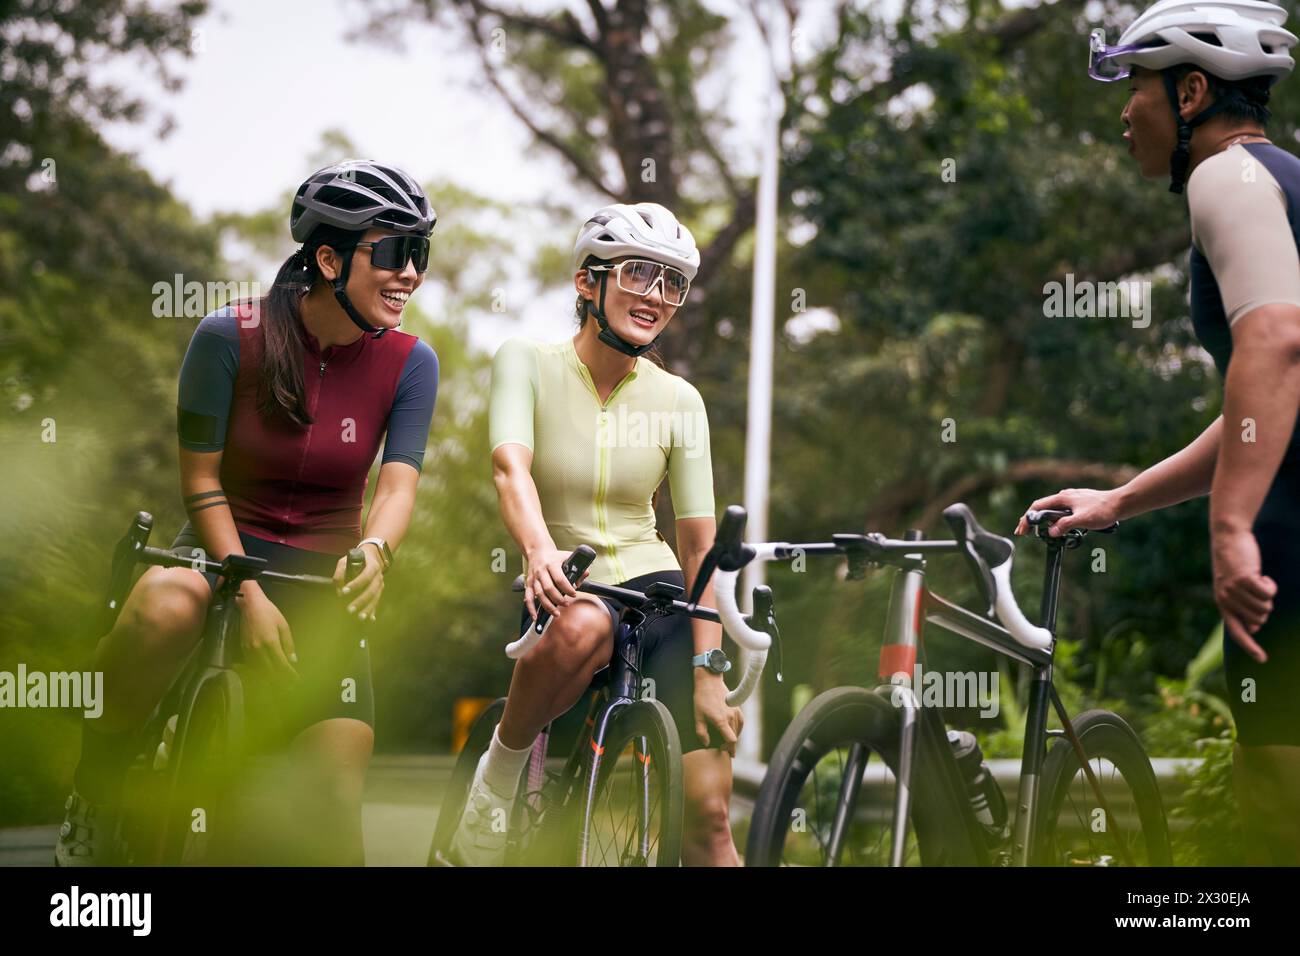 Gruppe von drei glücklichen jungen asiatischen Radfahrern, die sich unterhalten, während sie im Freien Fahrrad fahren Stockfoto